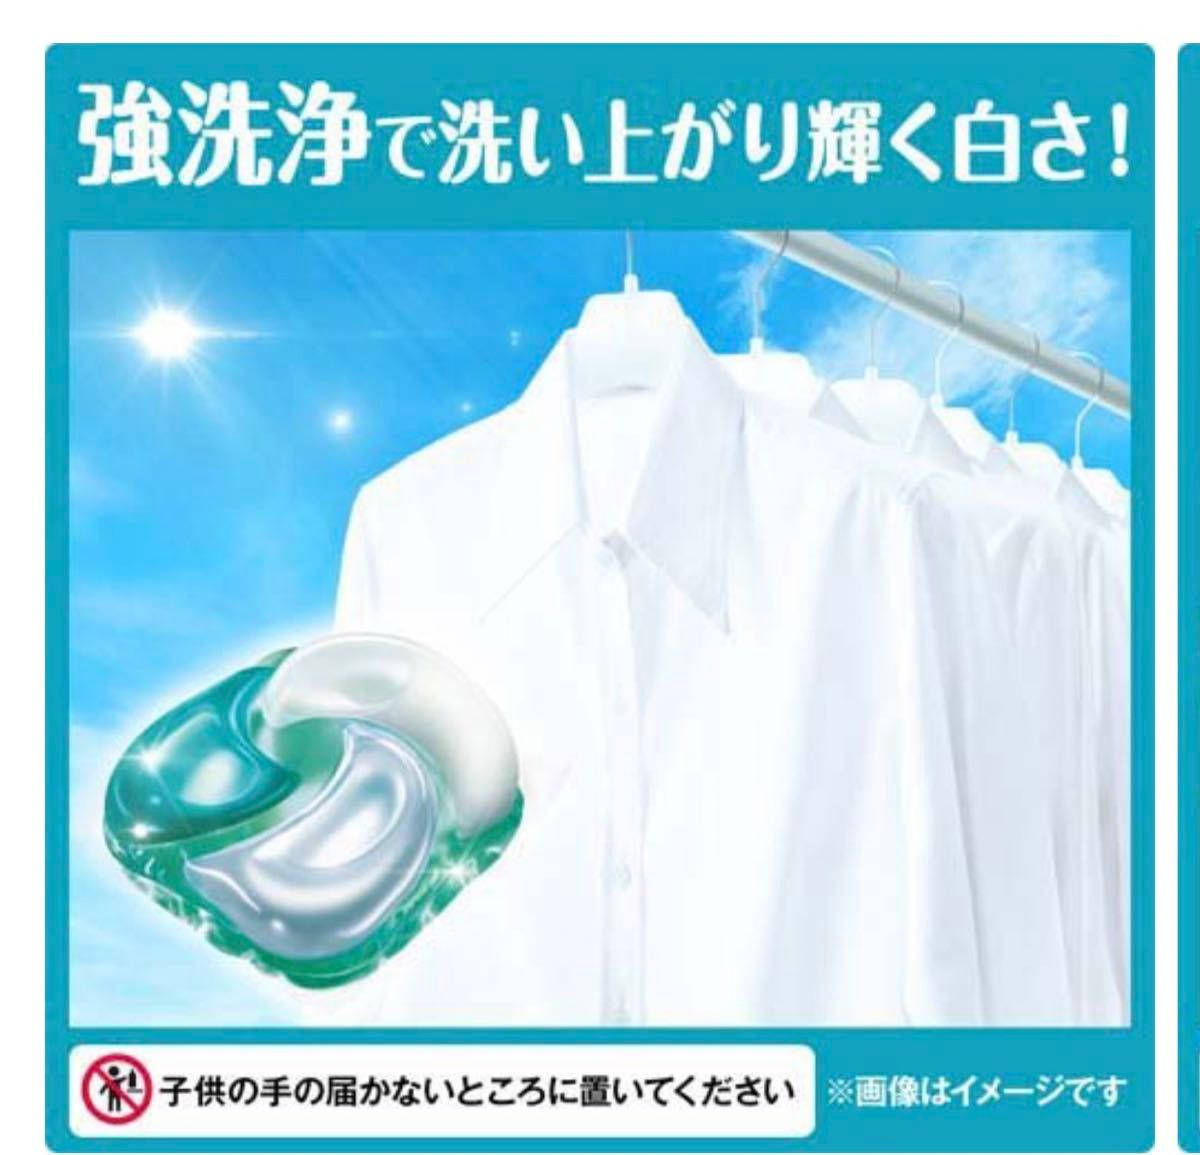 ボールド 洗濯洗剤 ジェルボール4D フレッシュフラワーサボン 詰替 36個×16袋